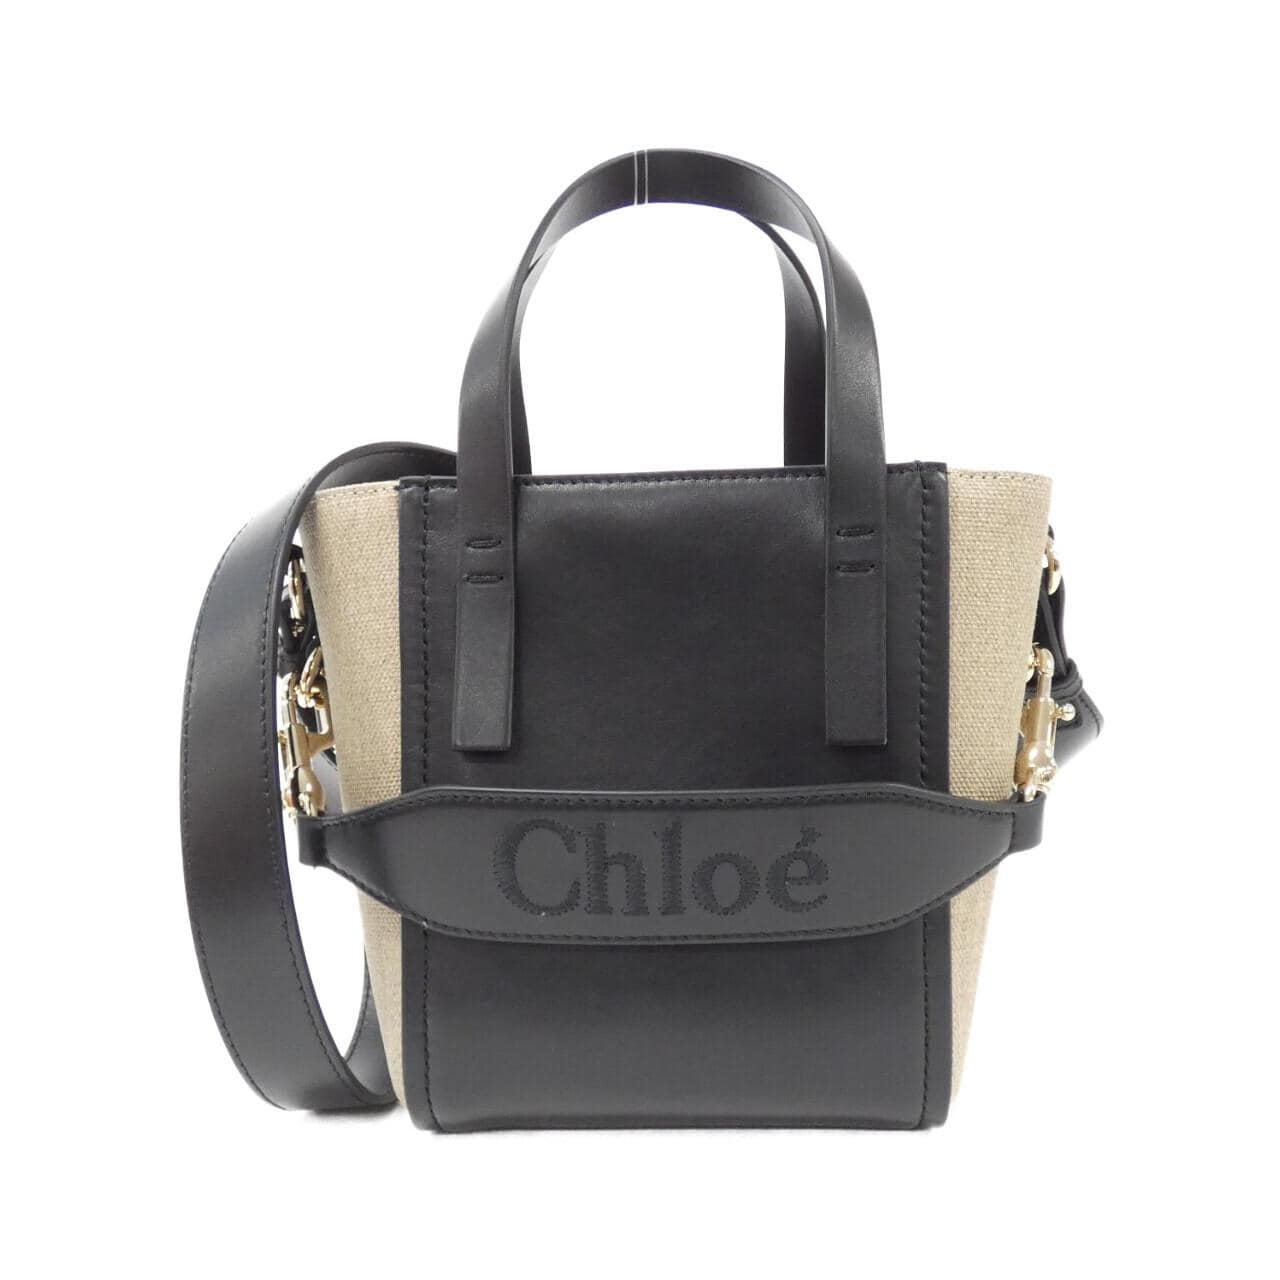 [BRAND NEW] Chloe CHLOE SENSE Small Tote CHC23AS425L16 Bag